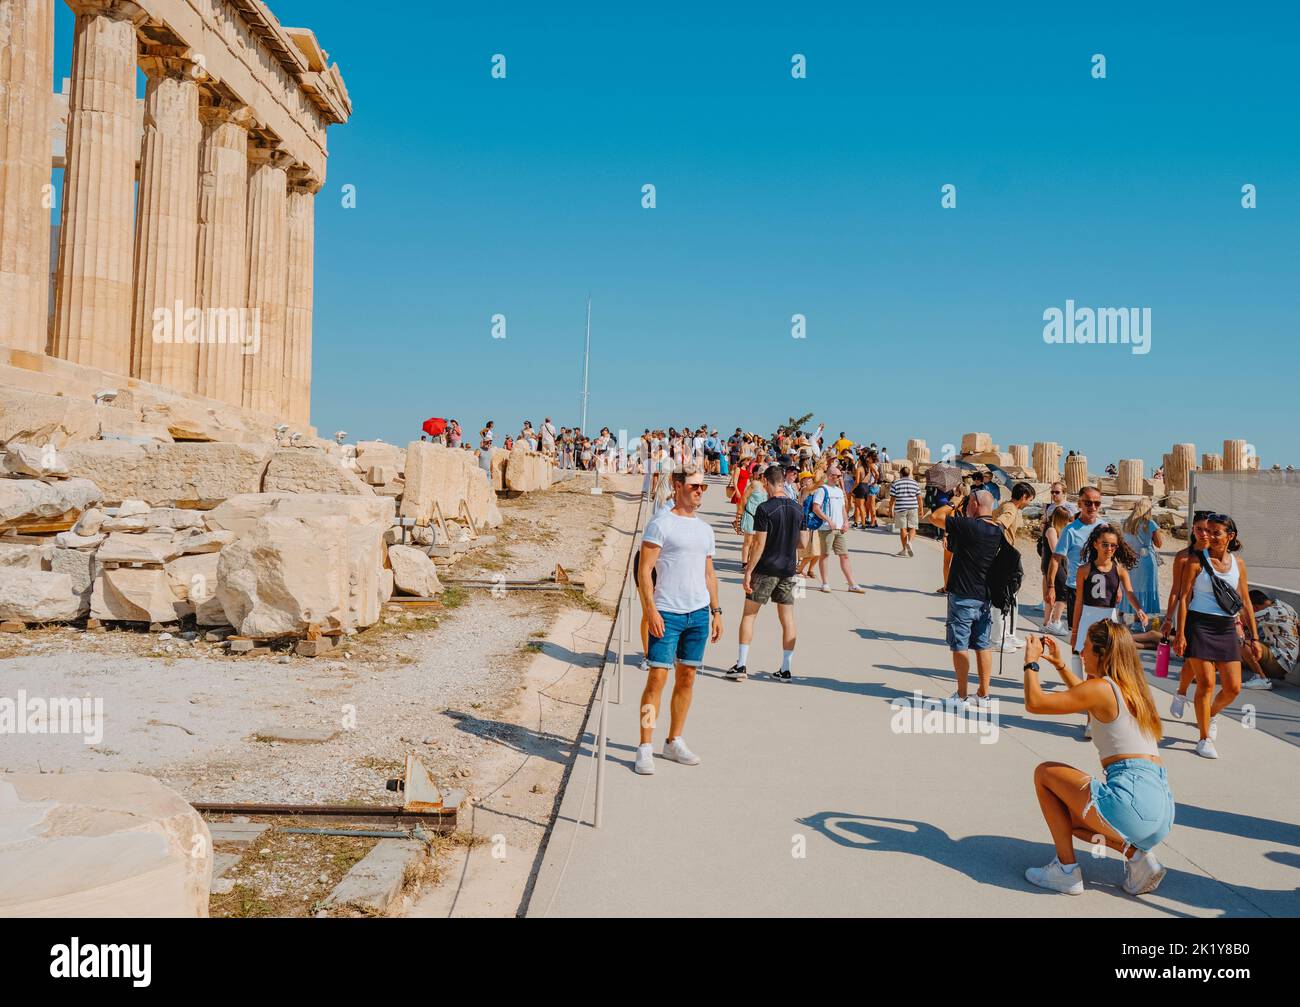 Atenas, Grecia - 30 de agosto de 2022: Una joven toma una foto de un joven delante de los restos del famoso Partenón, en la Acrópolis de Atenas Foto de stock